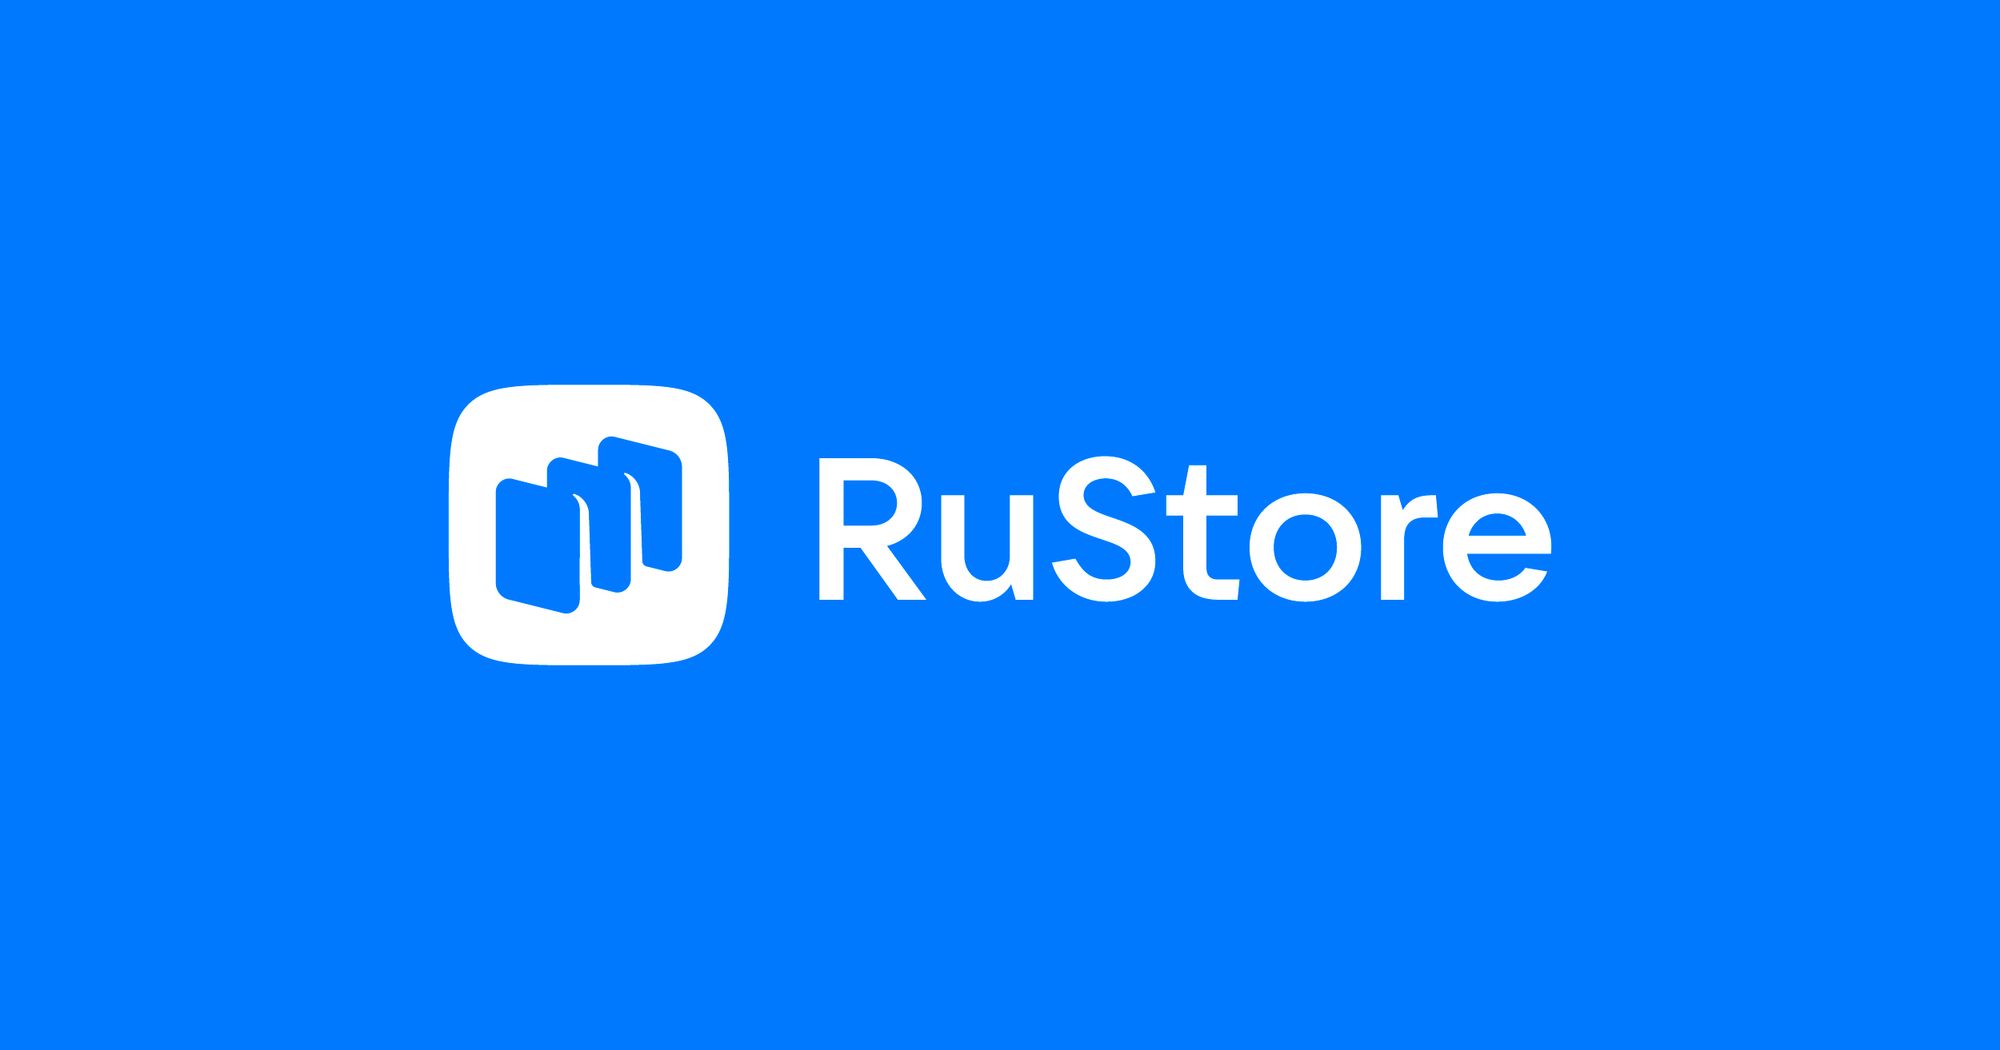 Китайские производители стали предустанавливать RuStore при поставках смартфонов в Россию